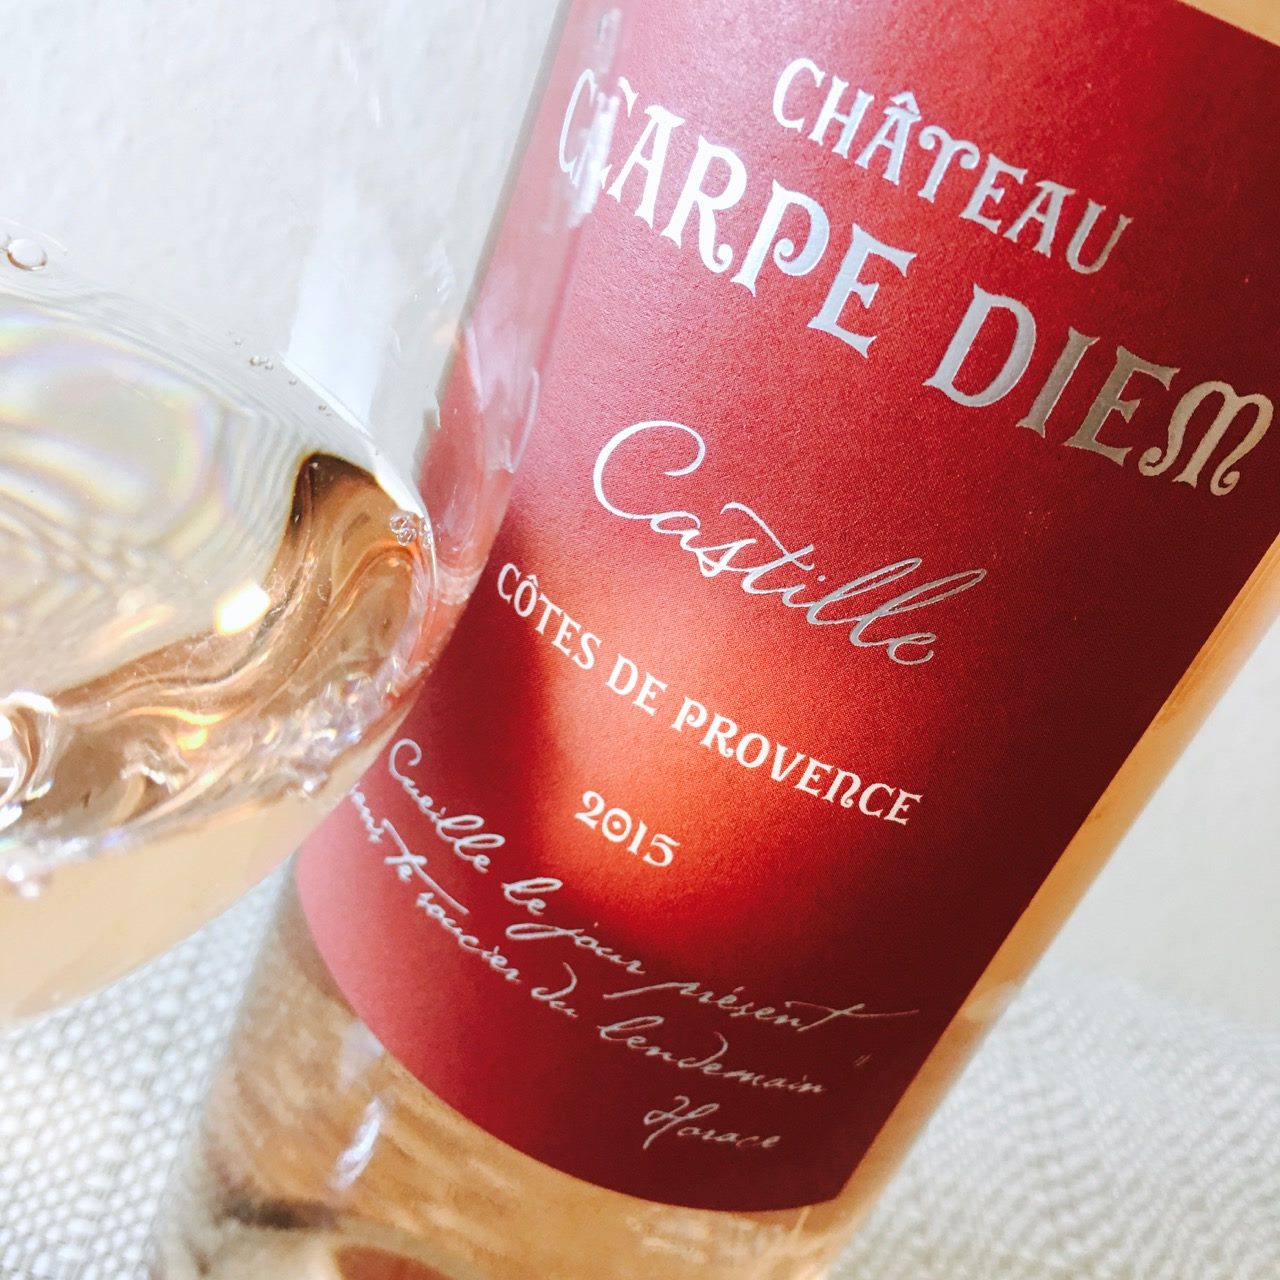 2015 Château Carpe Diem Rosé Castille Côtes de Provence